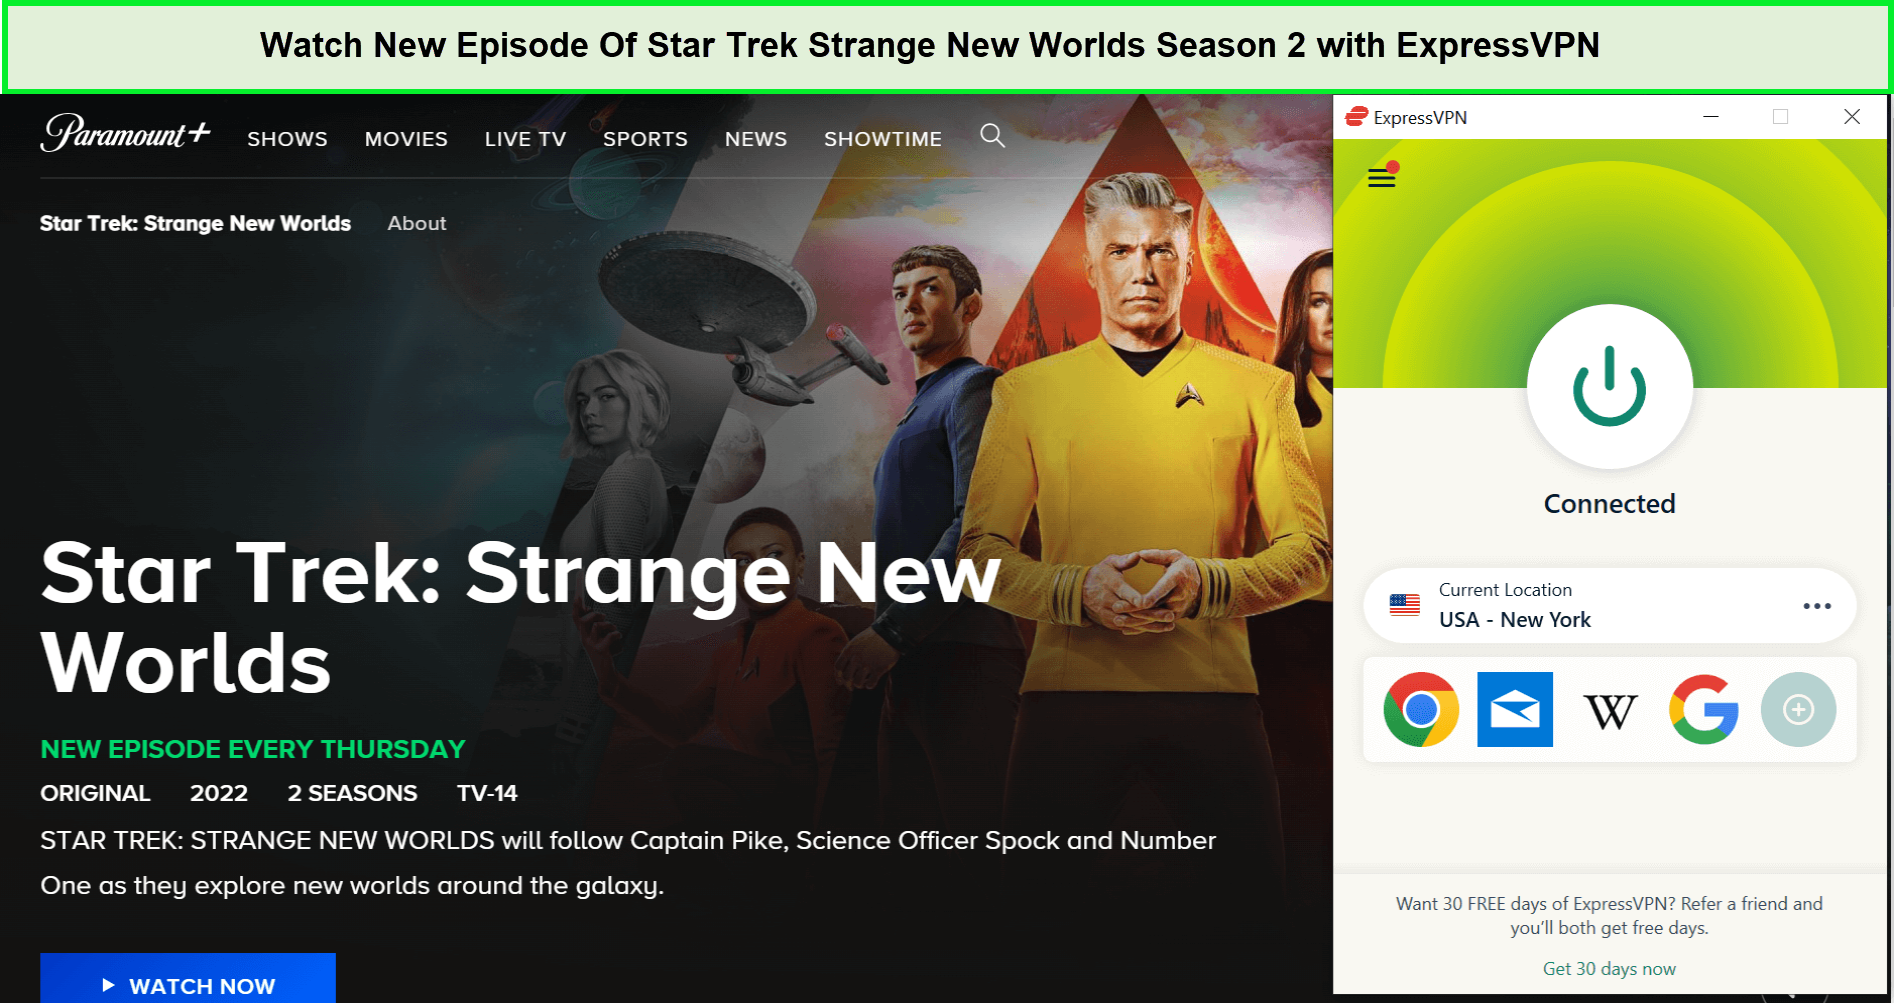 Watch-New-Episode-Of-Star-Trek-Strange-New-Worlds-Season-2-in-UAE-with-ExpressVPN